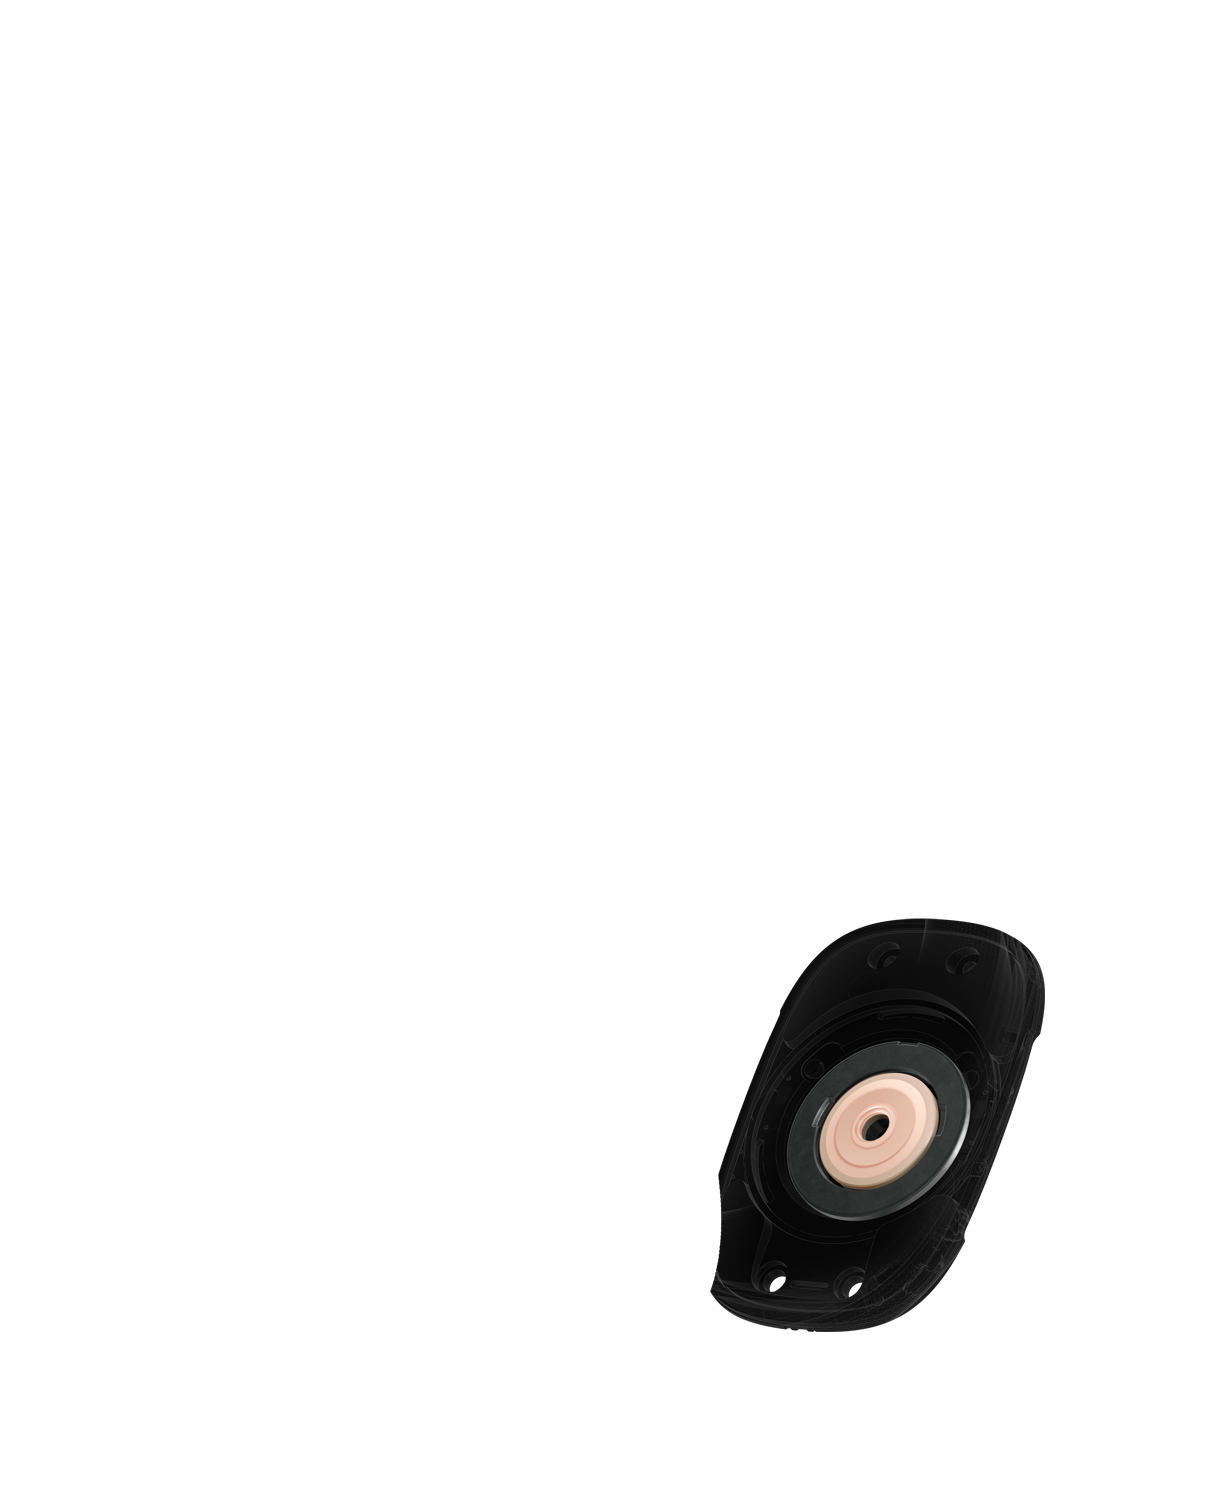 Още по-приближен изглед във вътрешността на драйвера с акцент върху пръстеновидния магнит, който намалява изкривяването на звука.